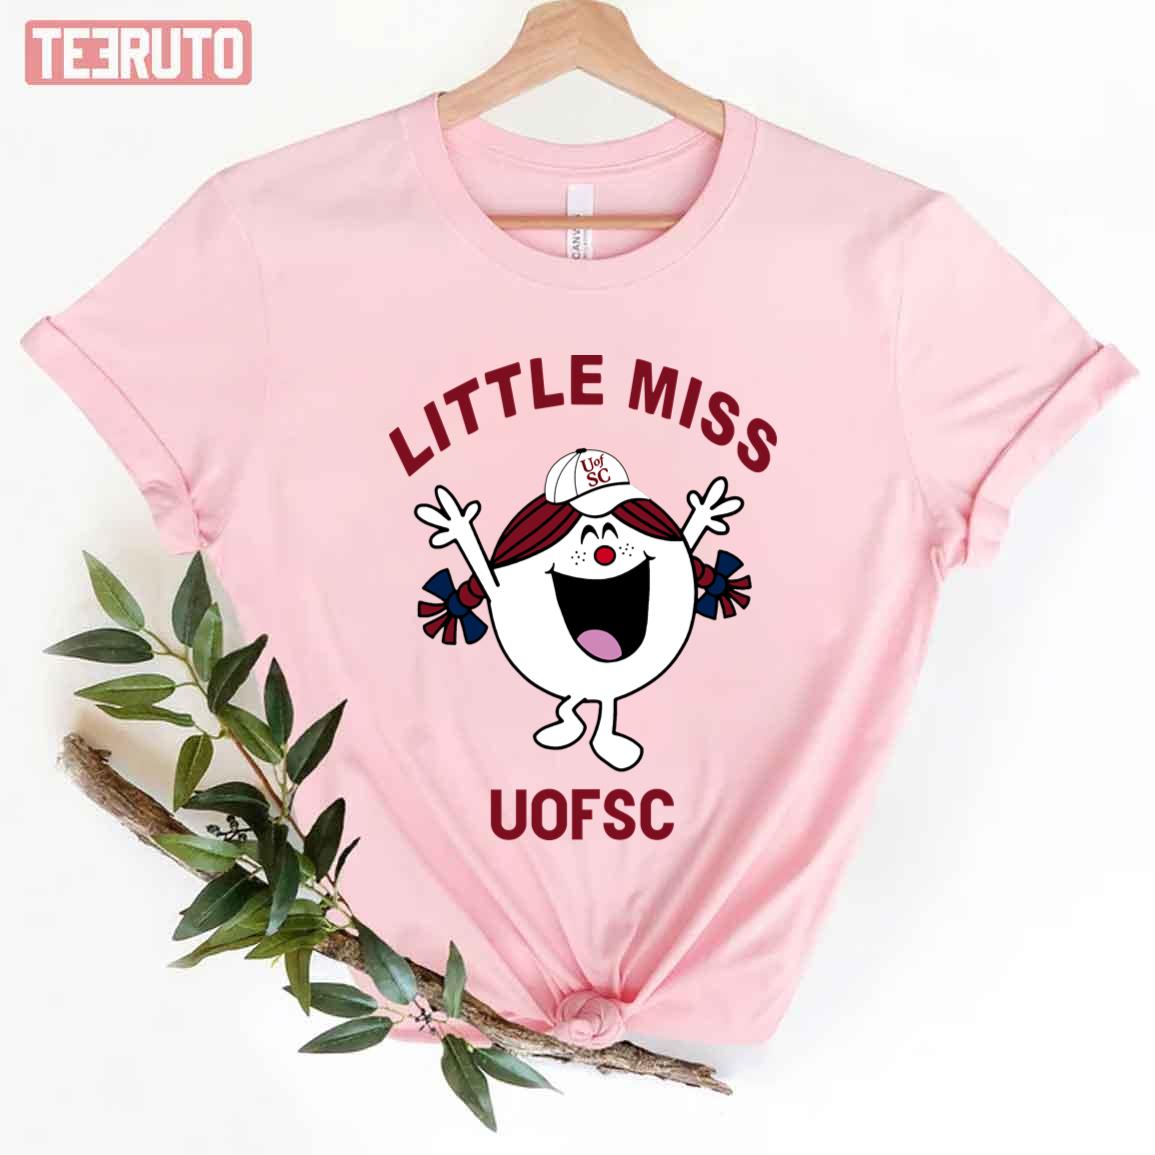 Football UOFSC Little Miss Unisex T-Shirt